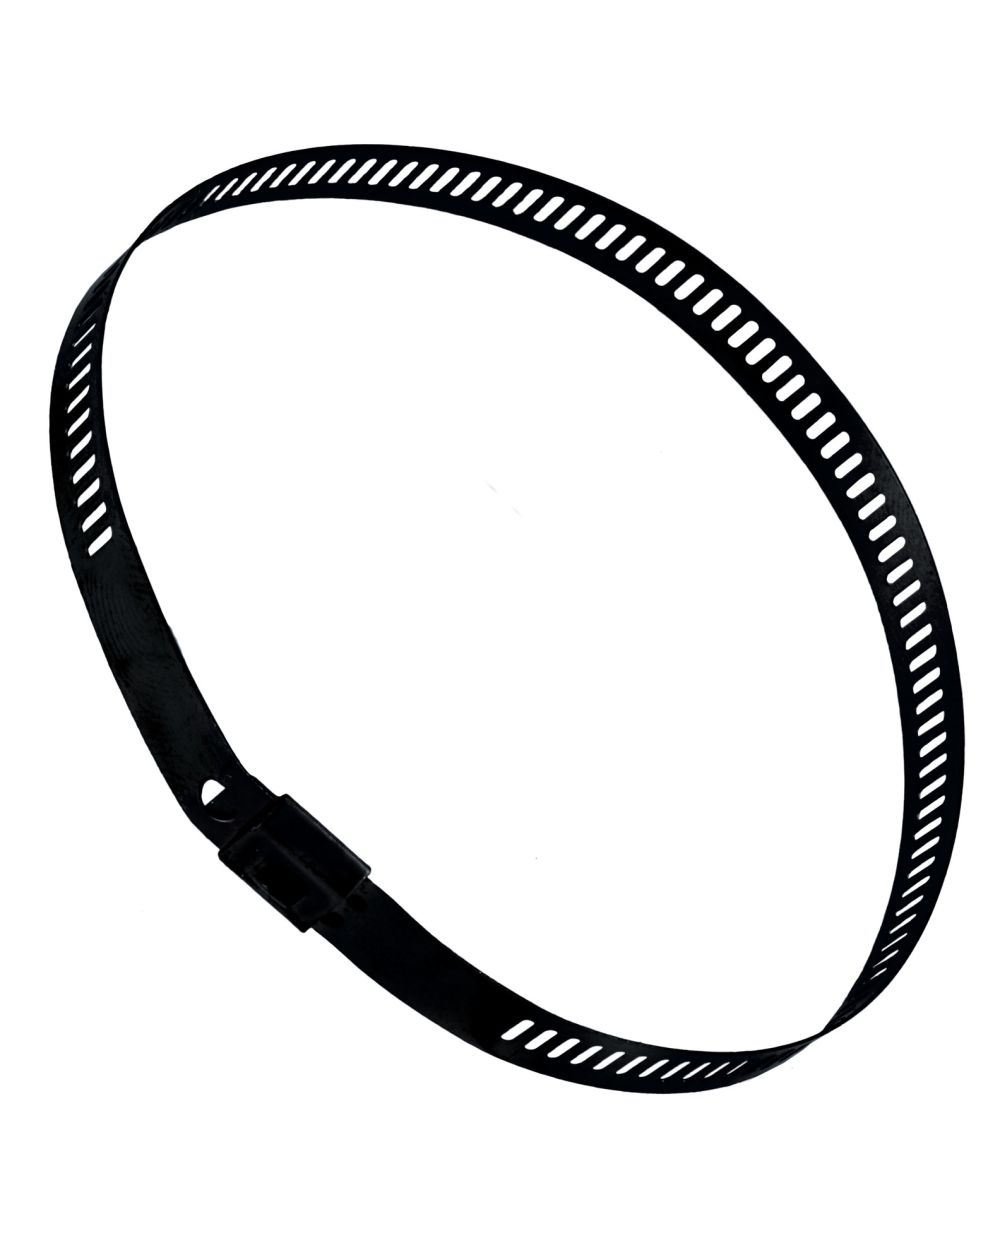 Edelstahl-Kabelbinder, 225mm, 7mm breit, schwarz beschichtet, max